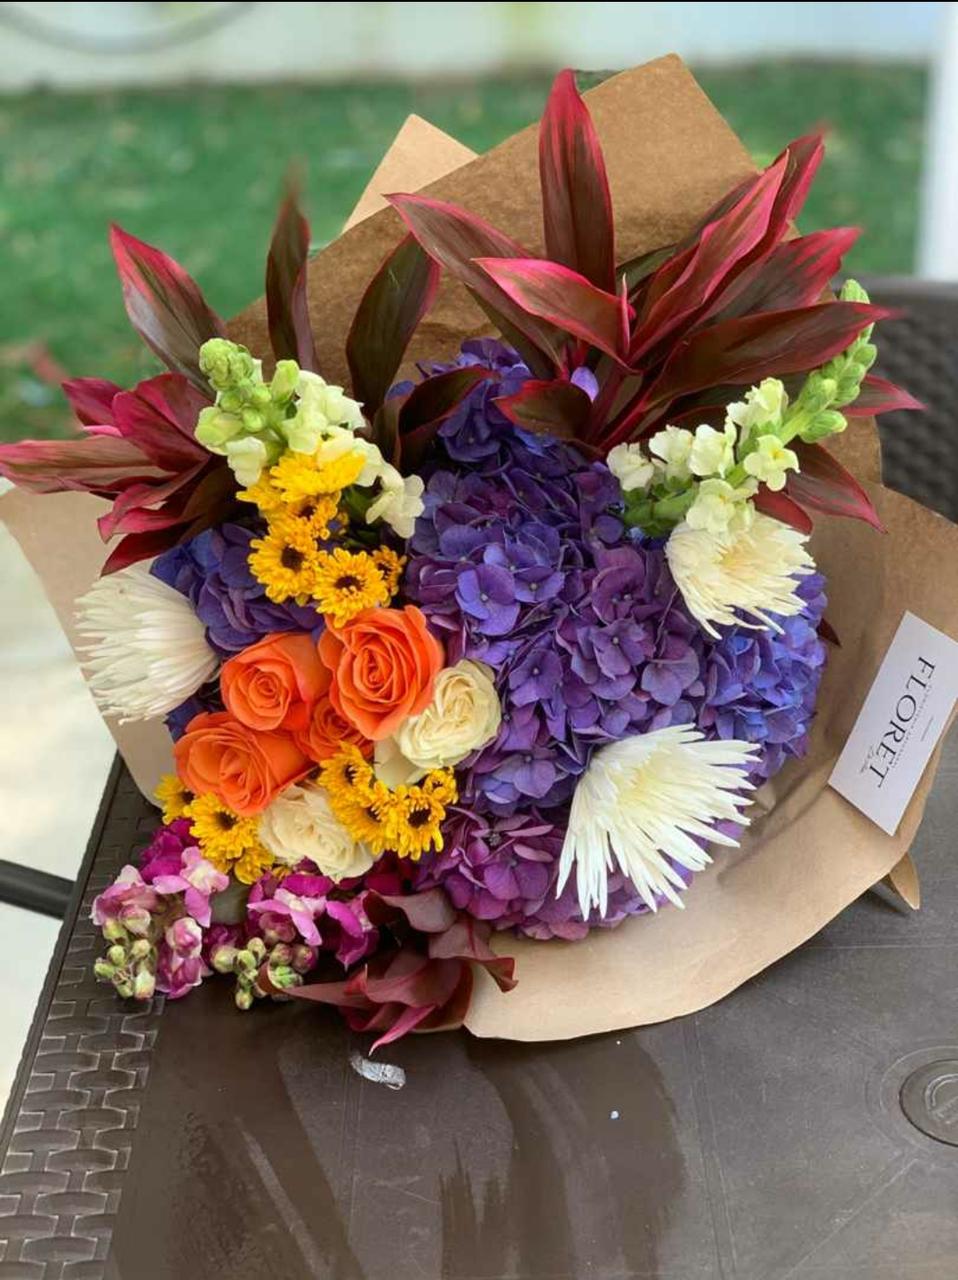 Bouquet del Florista de variedad de flores de temporada con elección a color FLORET